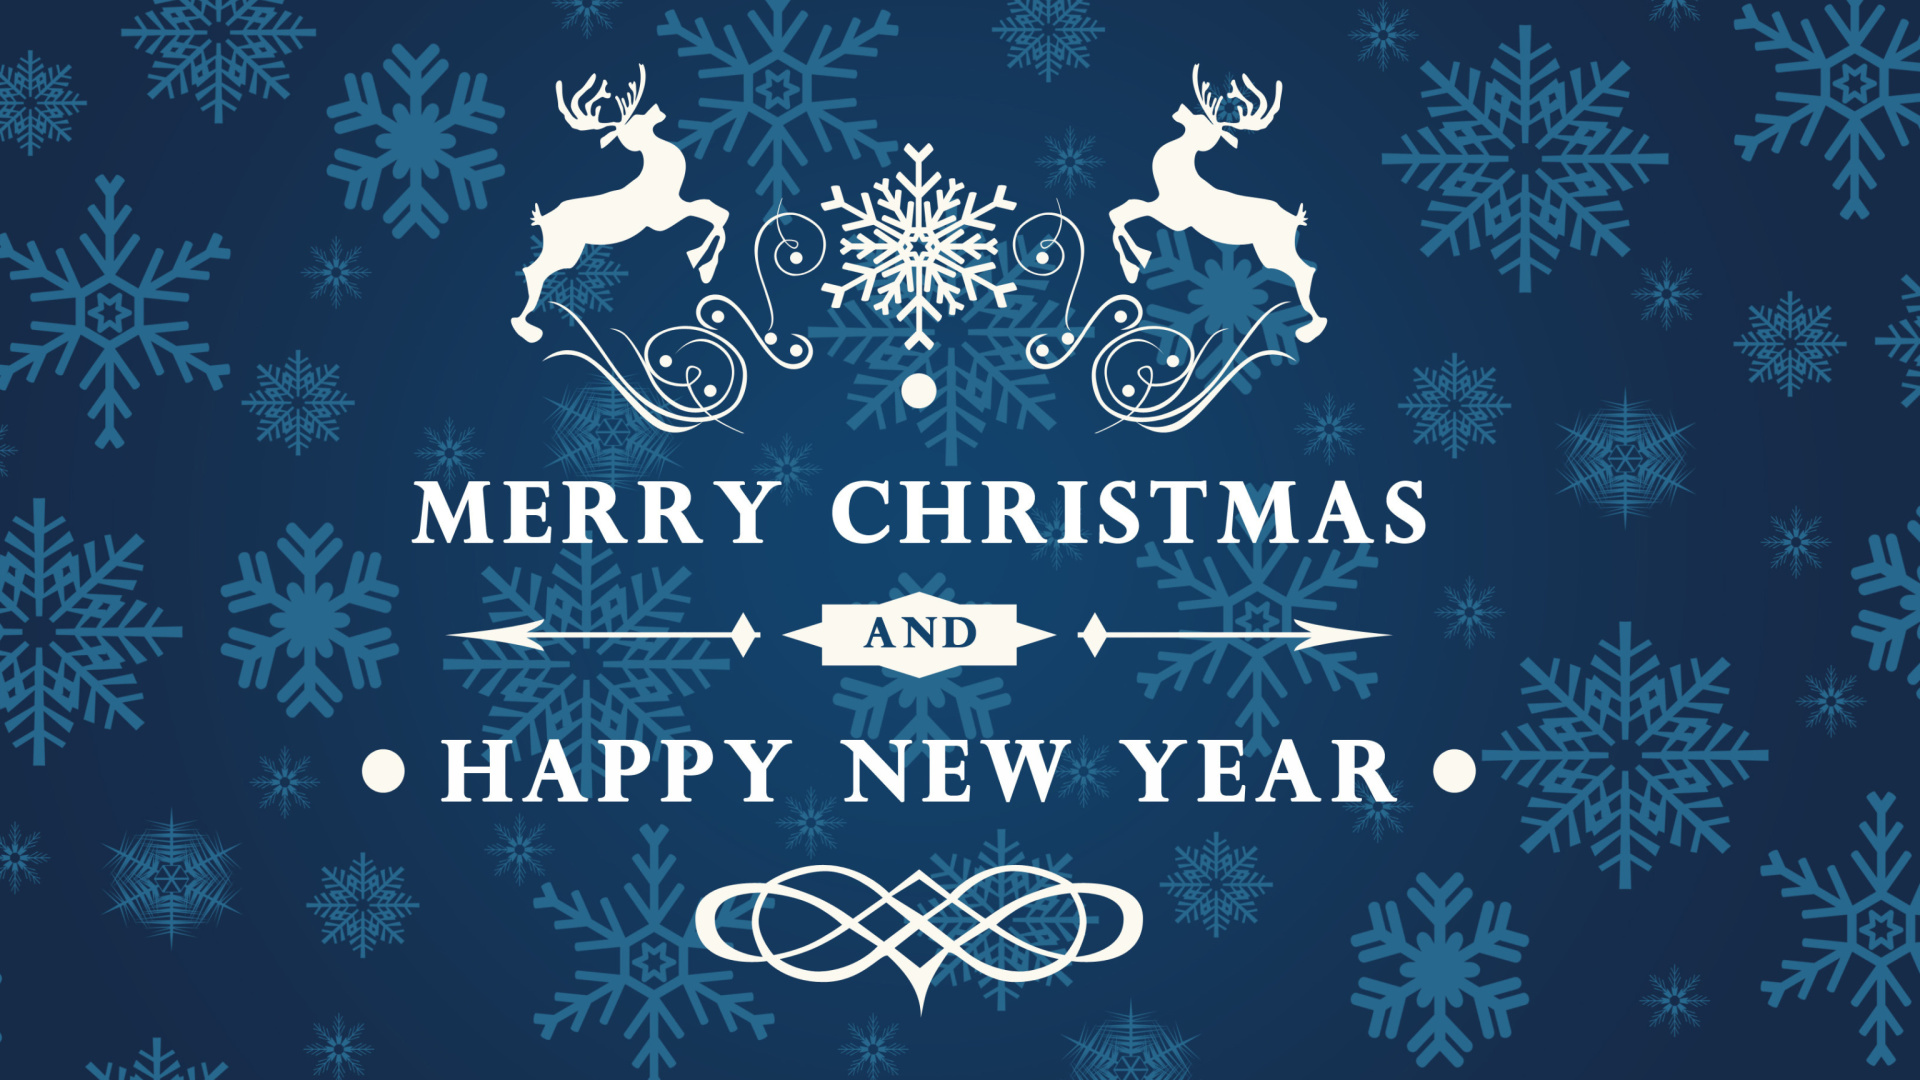 Обои Reindeer wish Merry Christmas and Happy New Year 1920x1080